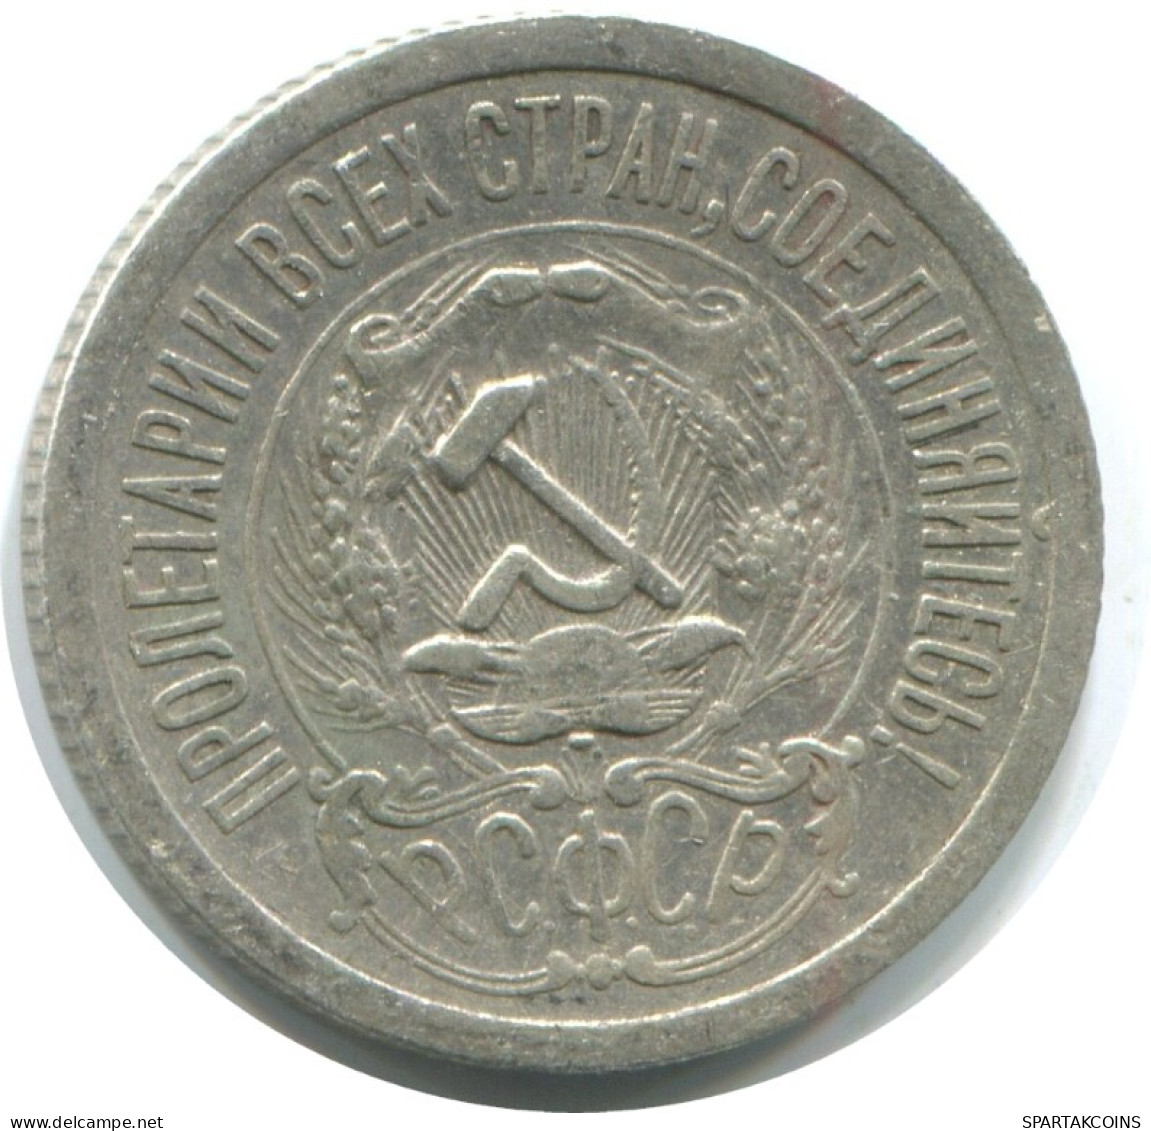 15 KOPEKS 1923 RUSSLAND RUSSIA RSFSR SILBER Münze HIGH GRADE #AF159.4.D.A - Russia